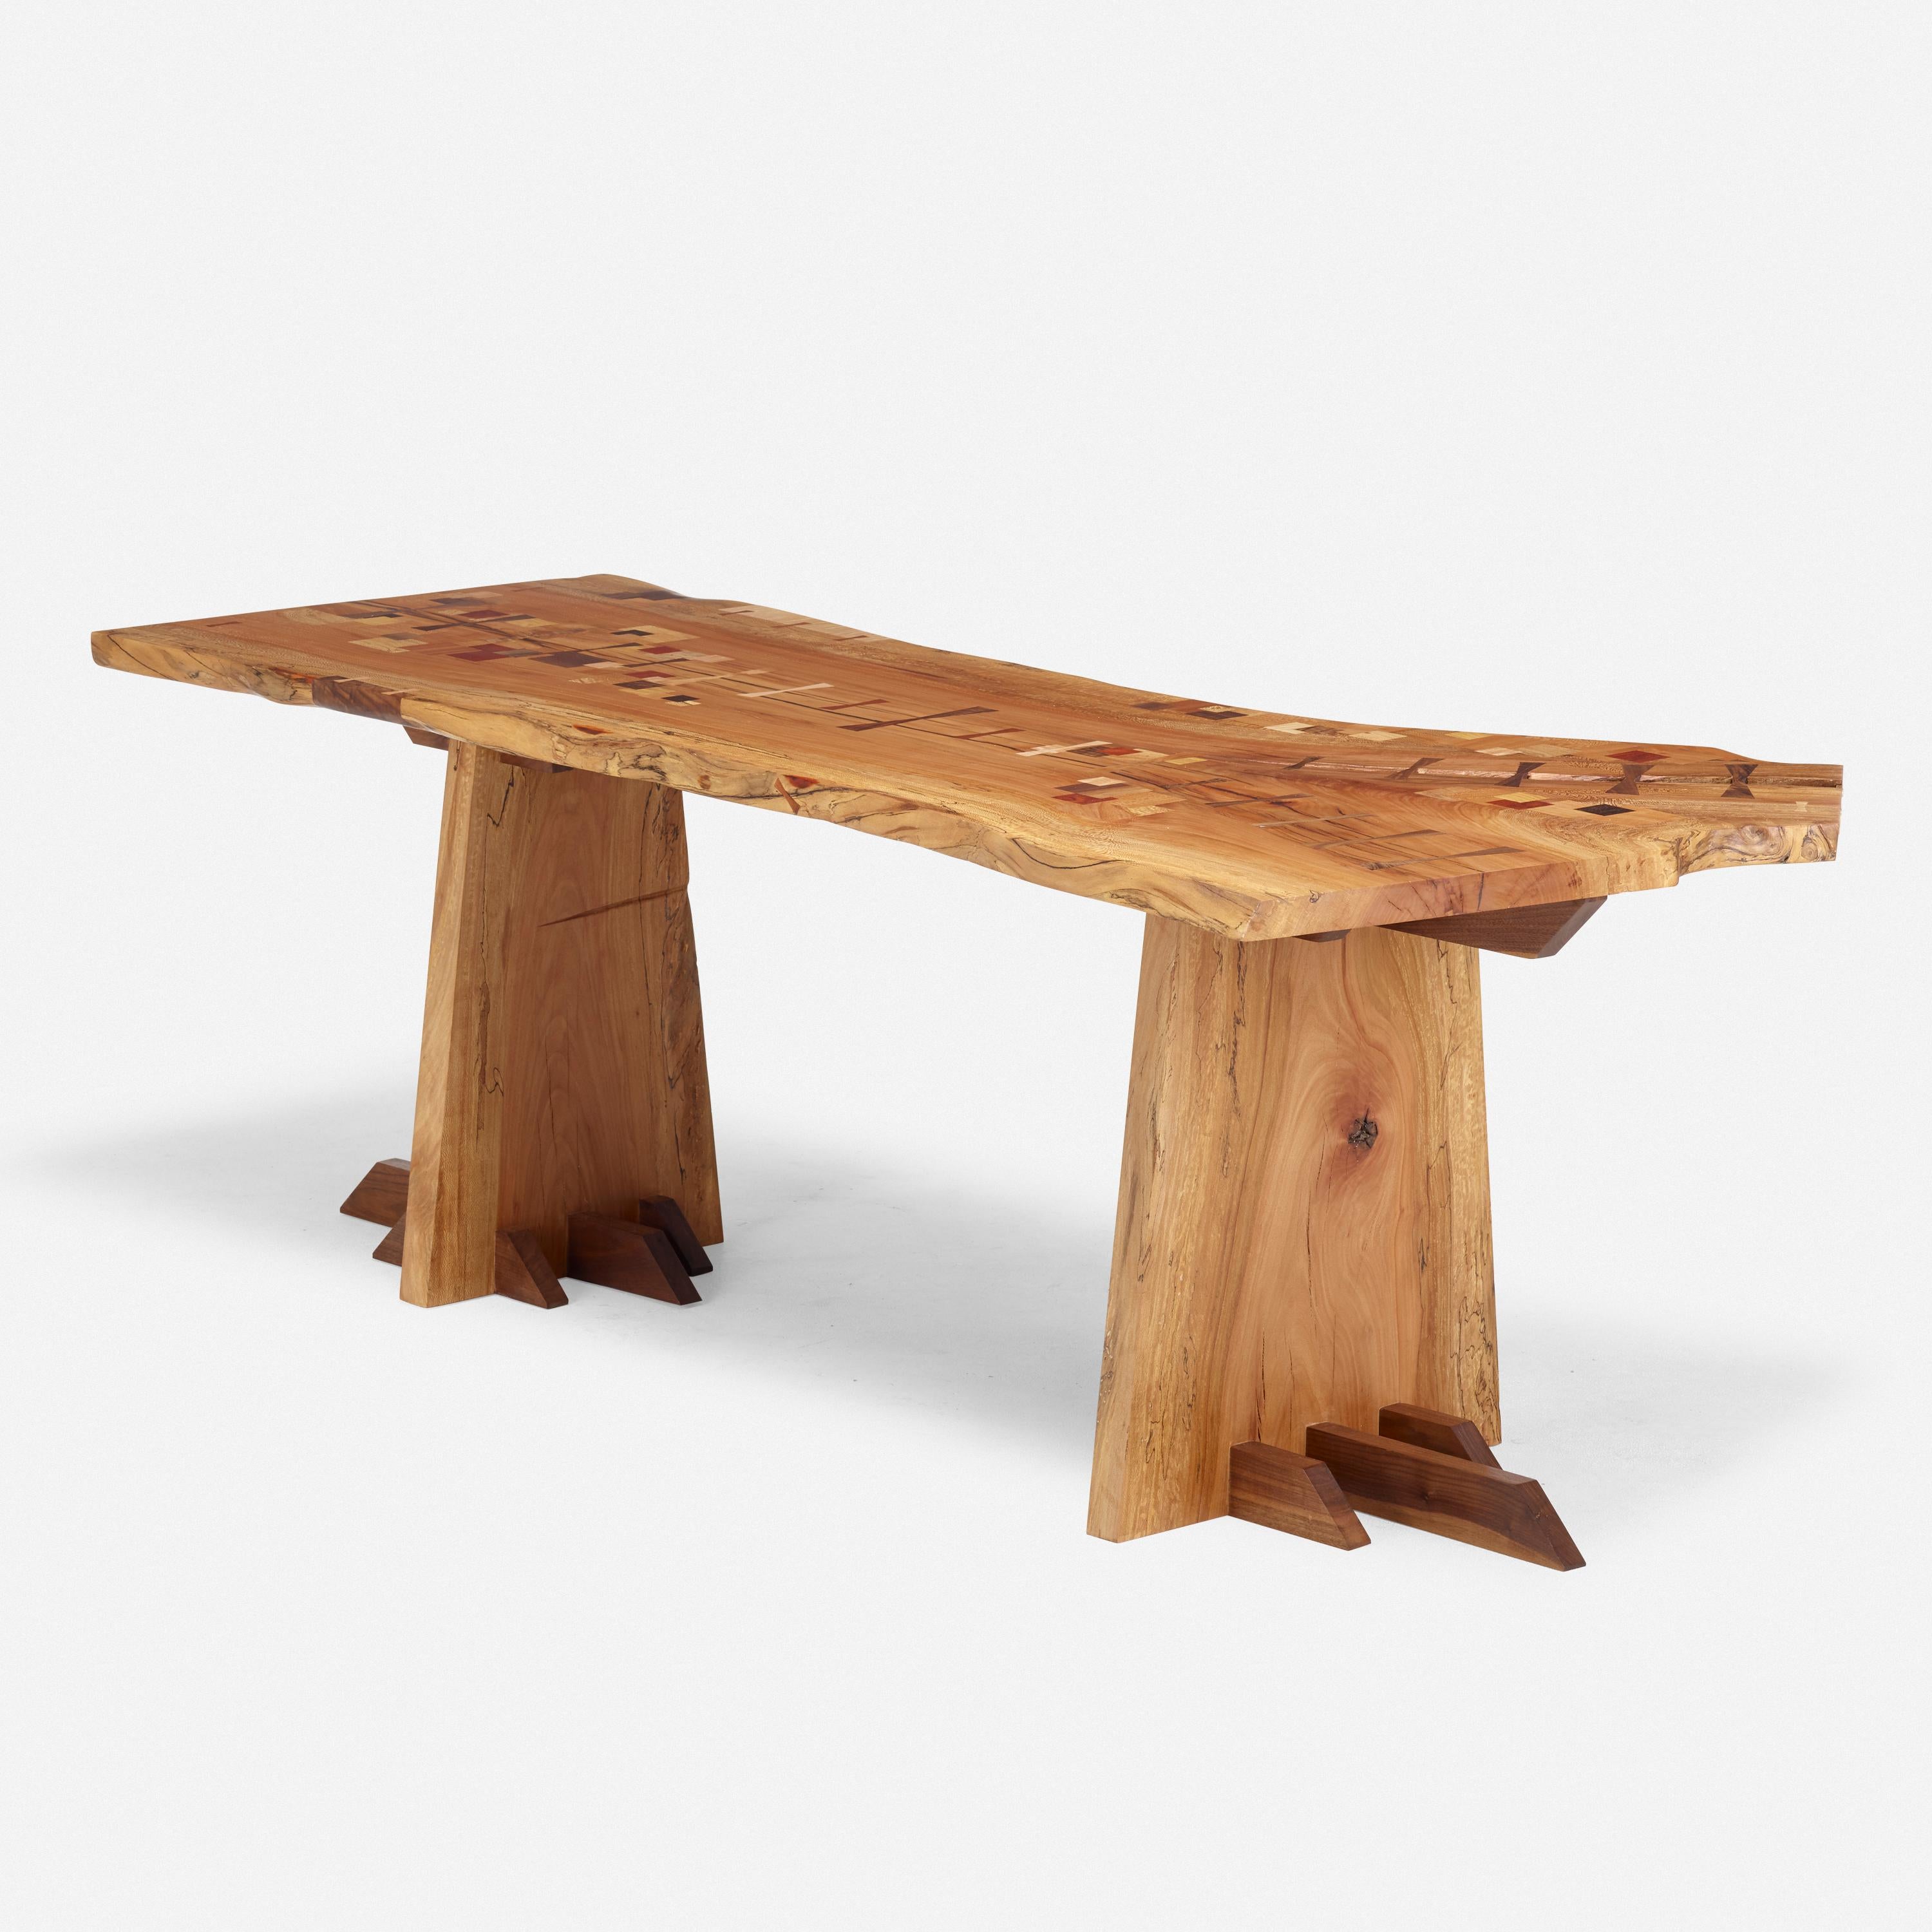 Magnifique table/bureau en sycomore avec une menuiserie unique et de nombreuses incrustations. Il est possible de travailler en privilégiant le type et la variation du bois.